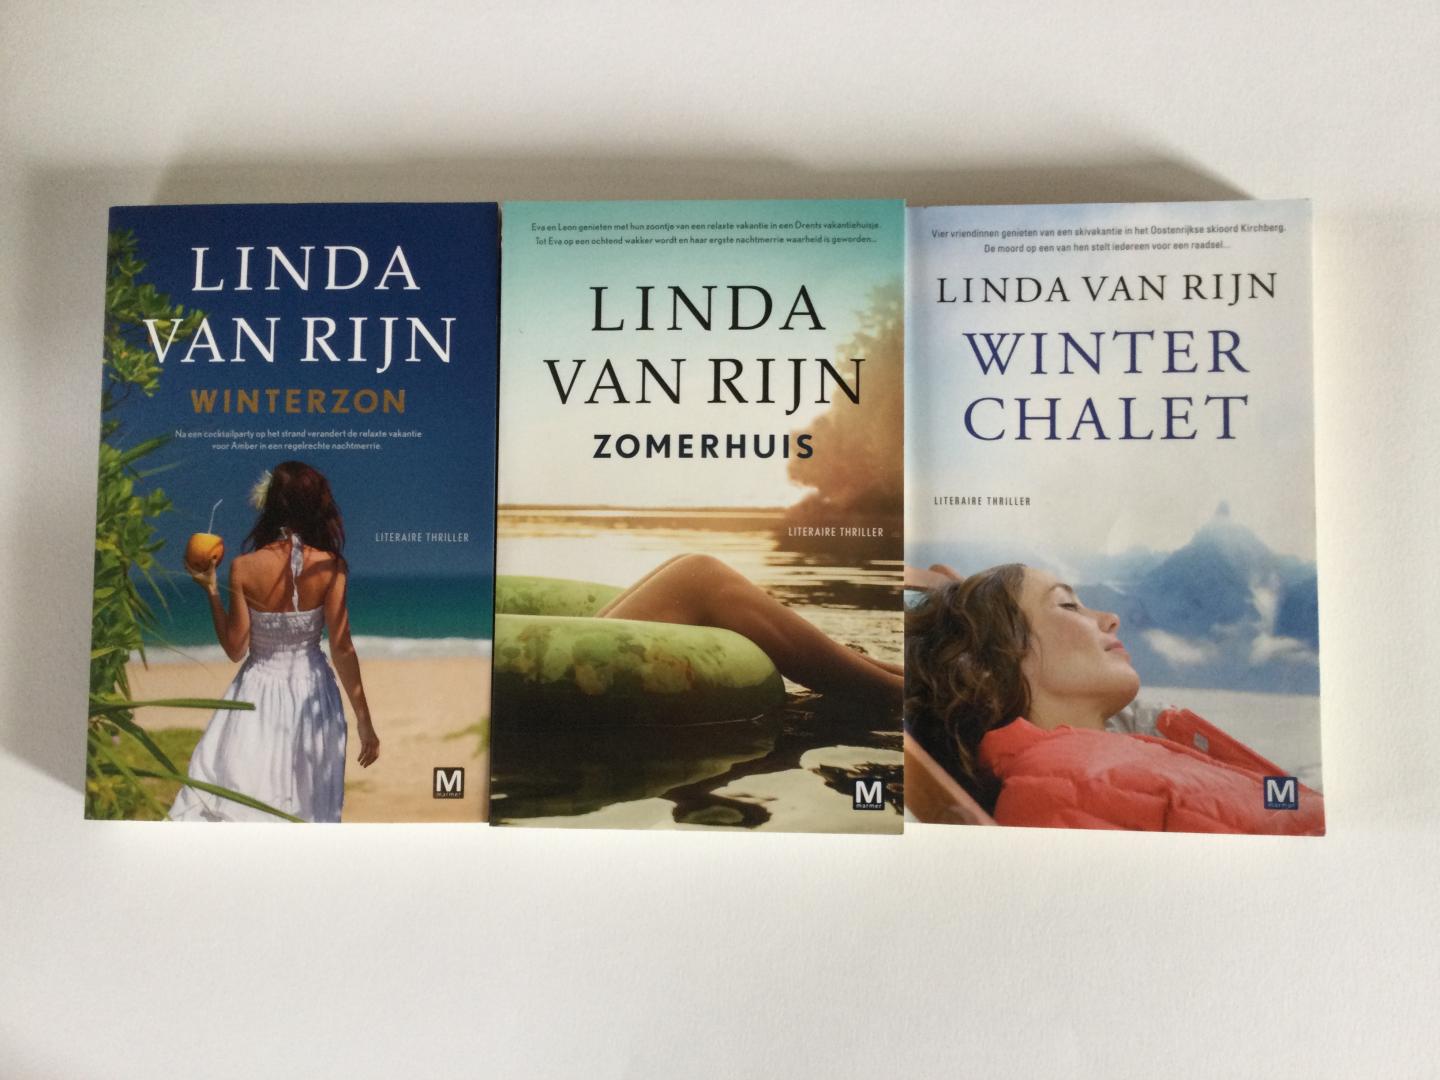 Rijn, Linda van - 3 boeken in 1 koop: Winter Chalet / Winterzon / Zomerhuis